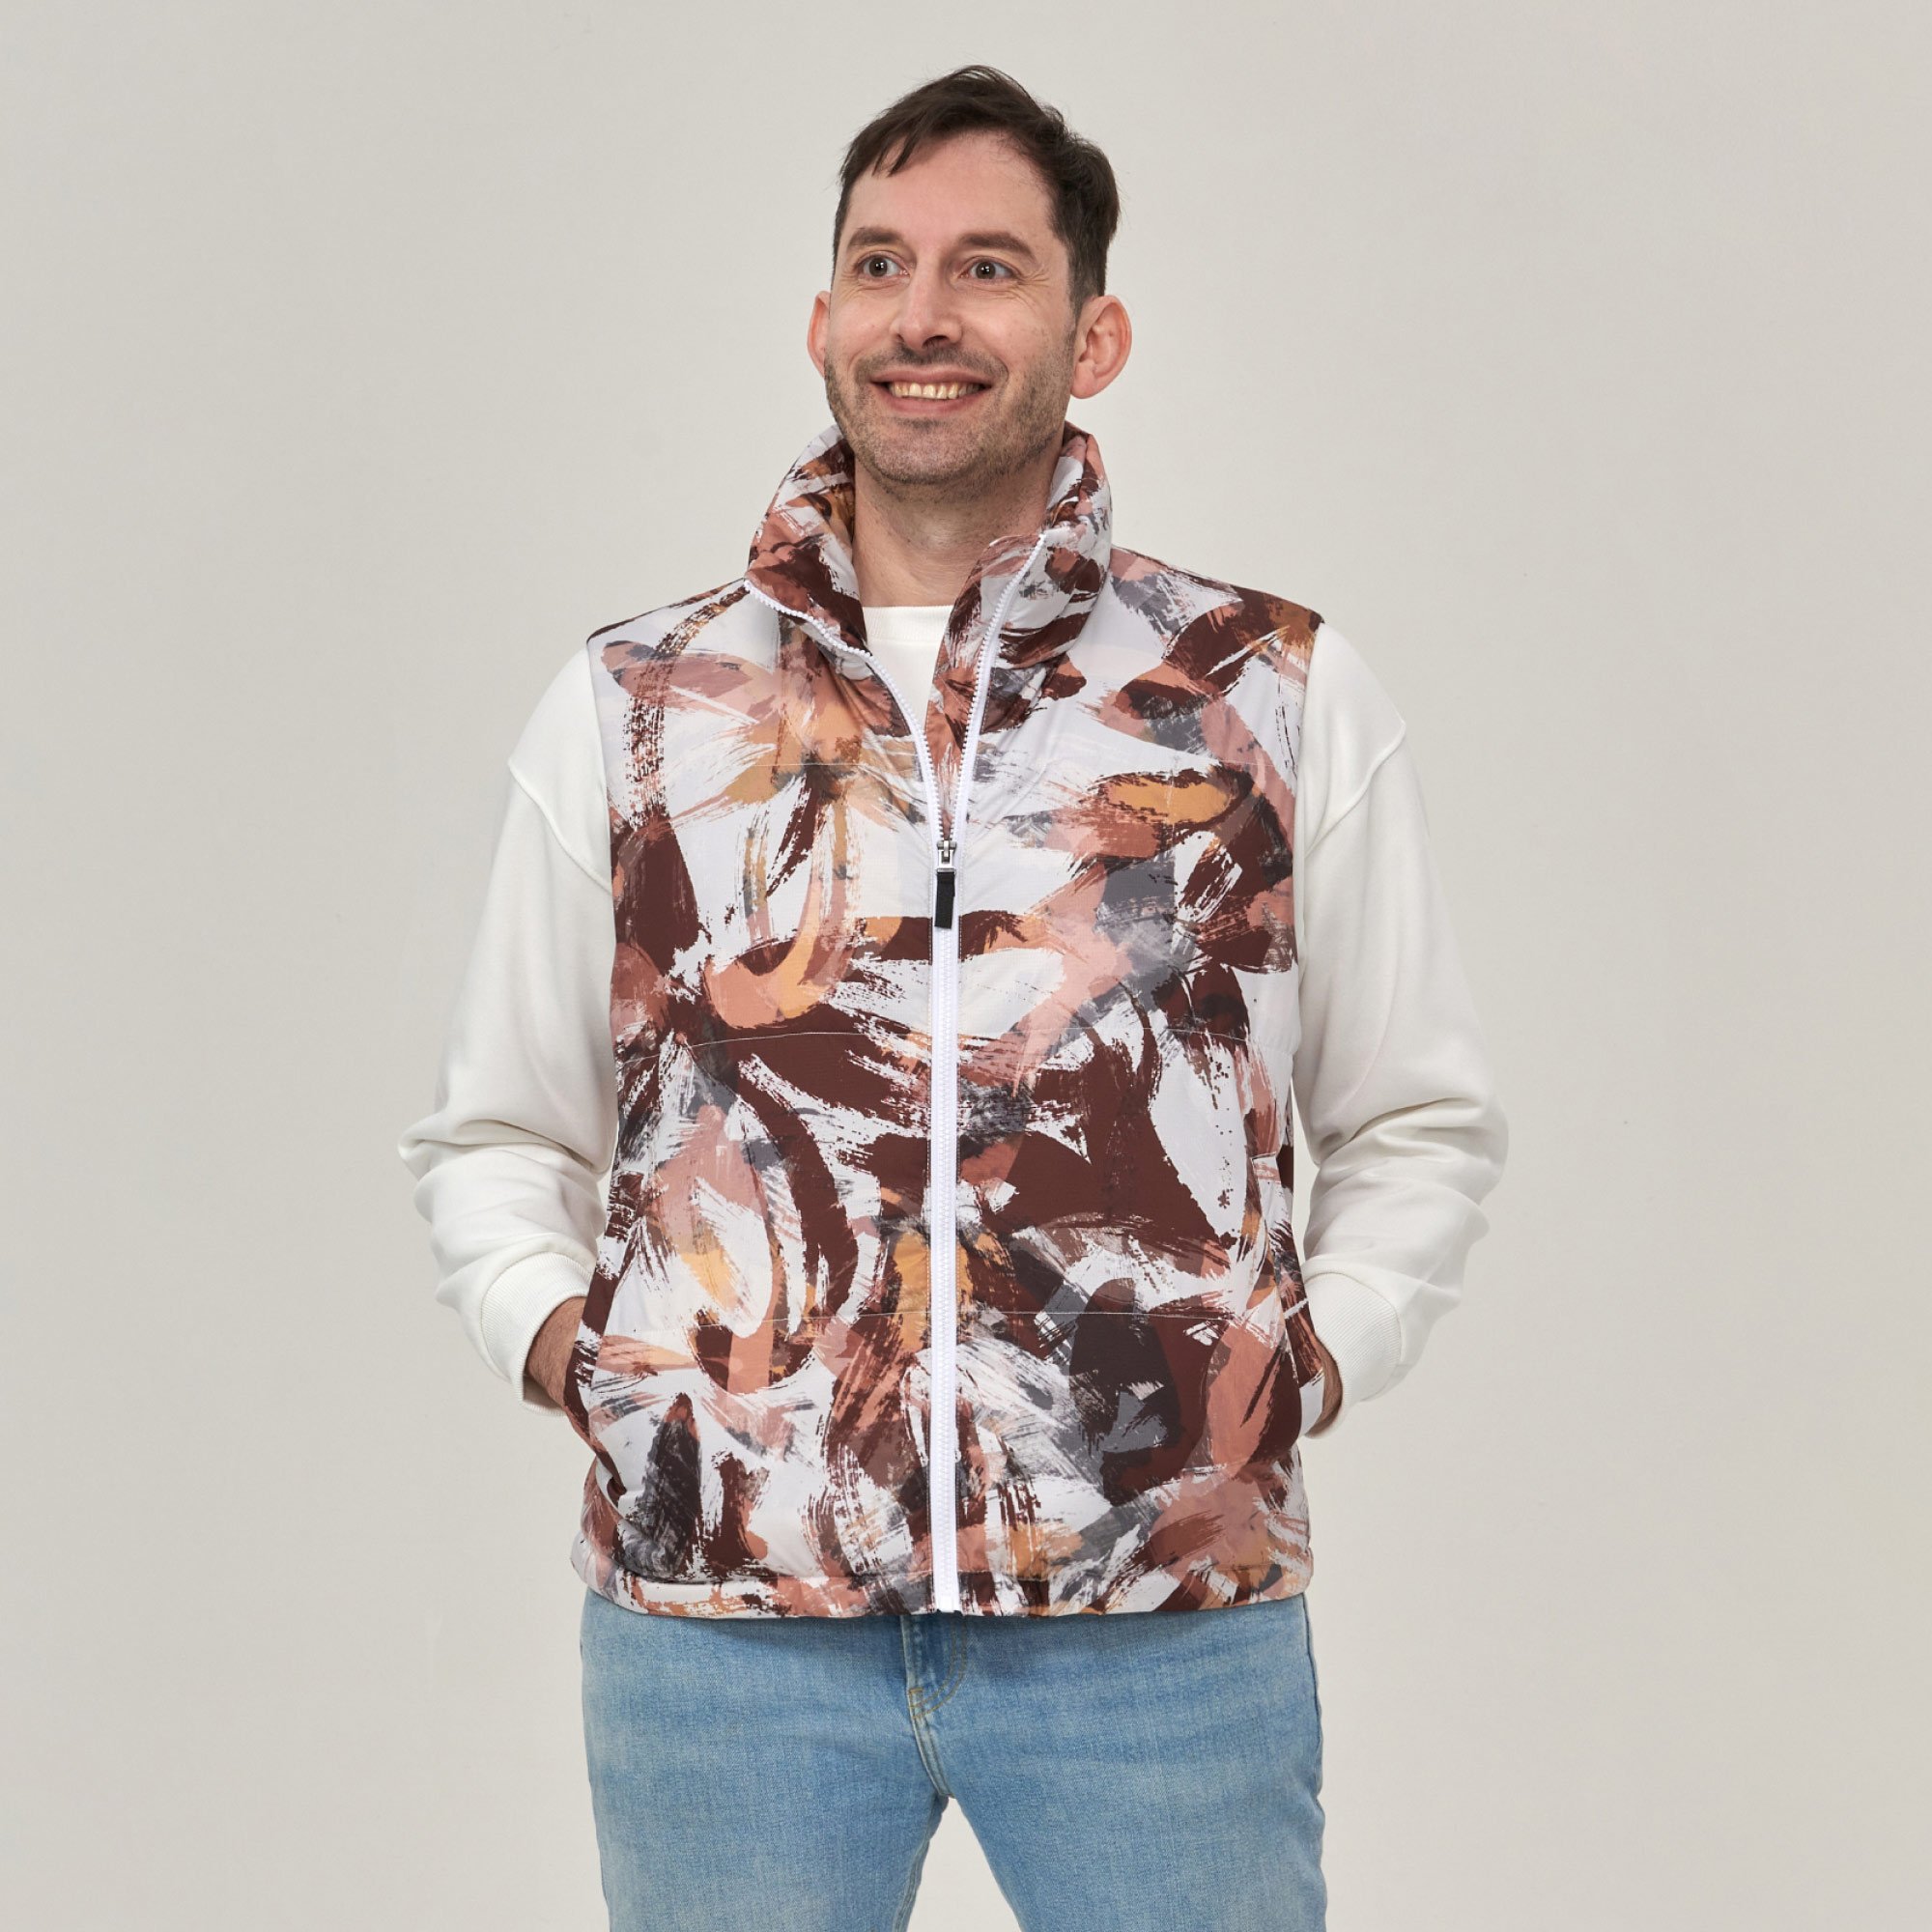 Men's Full-Zip Warm Sleeveless Winter Vest | NovaTomato